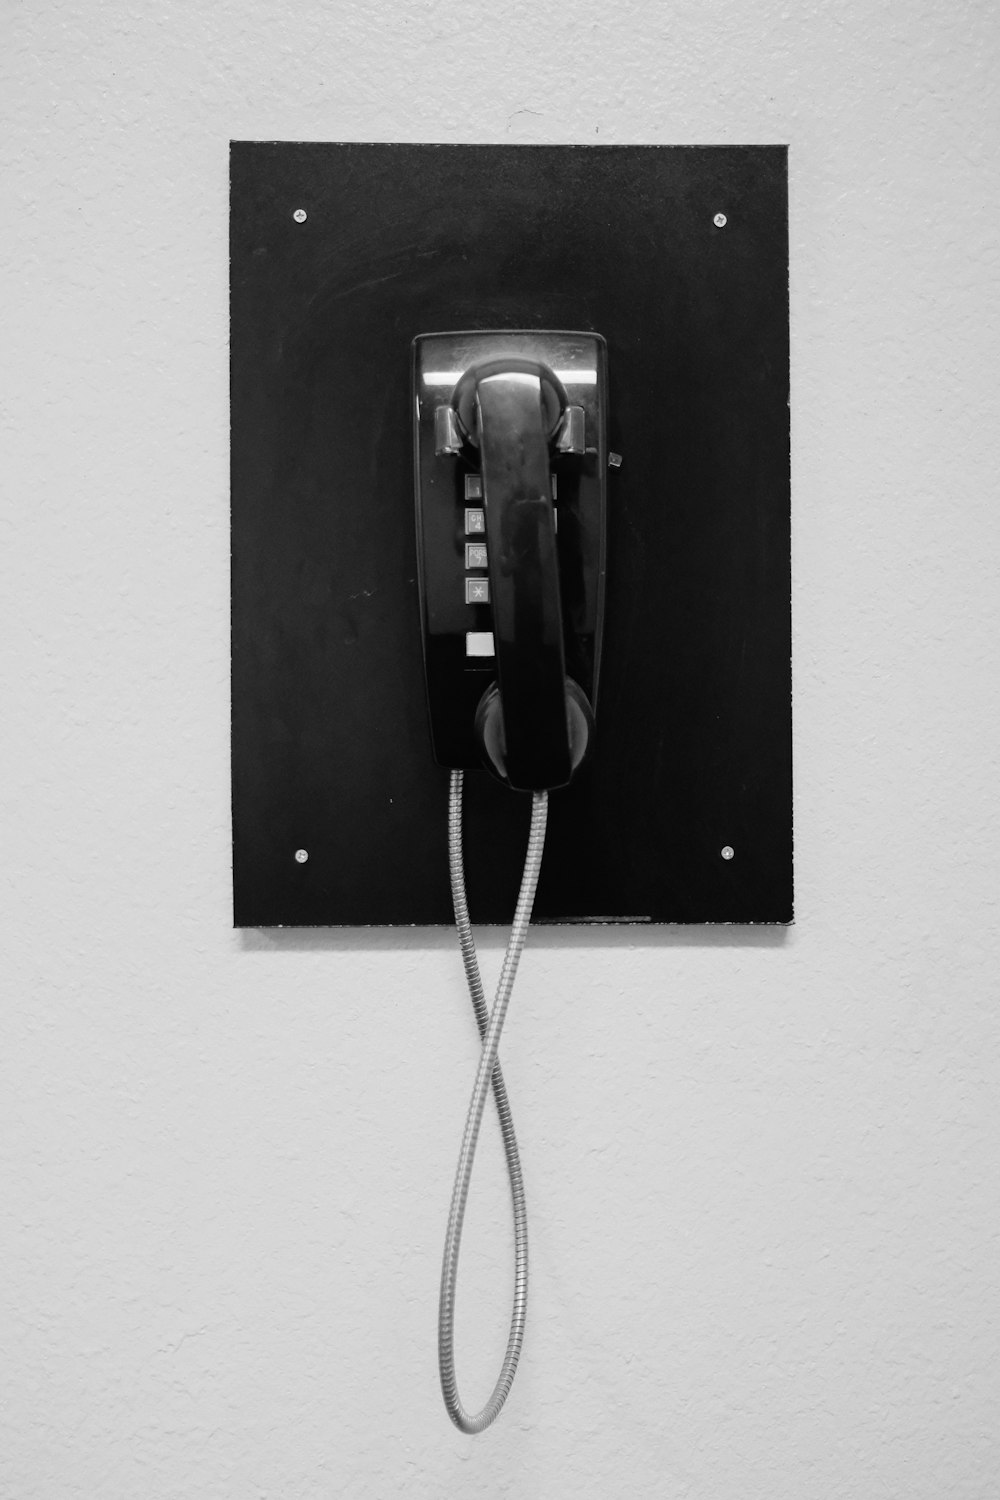 téléphone noir sur mur blanc